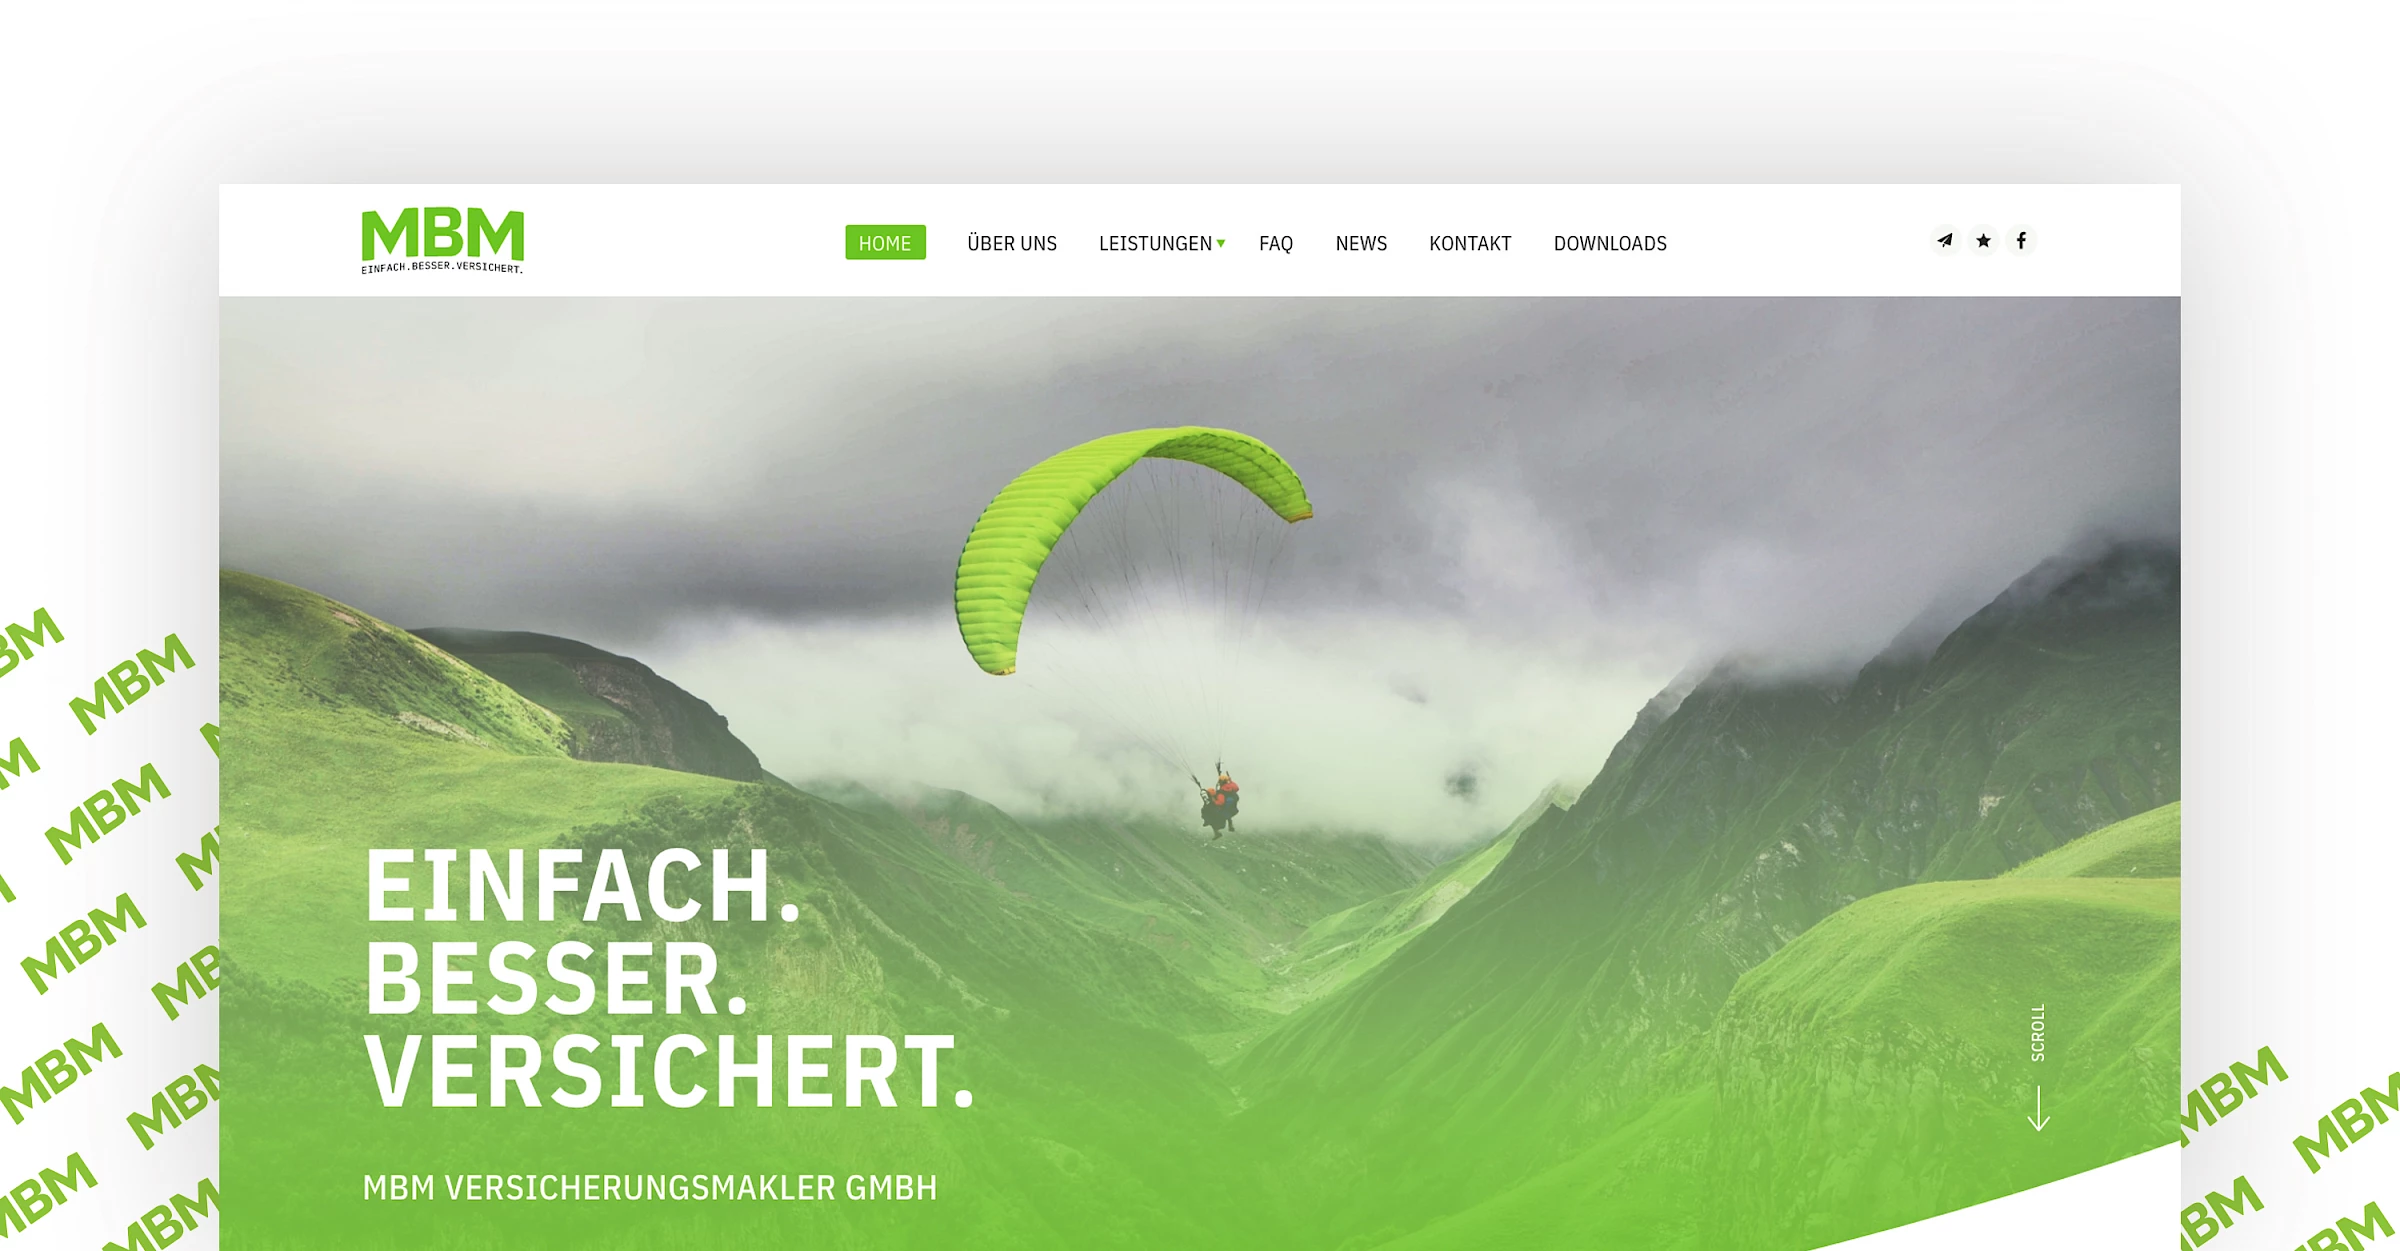 Webdesign der Website mbm.tirol, designed und programmiert von Buerostark Werbeagentur in Telfs